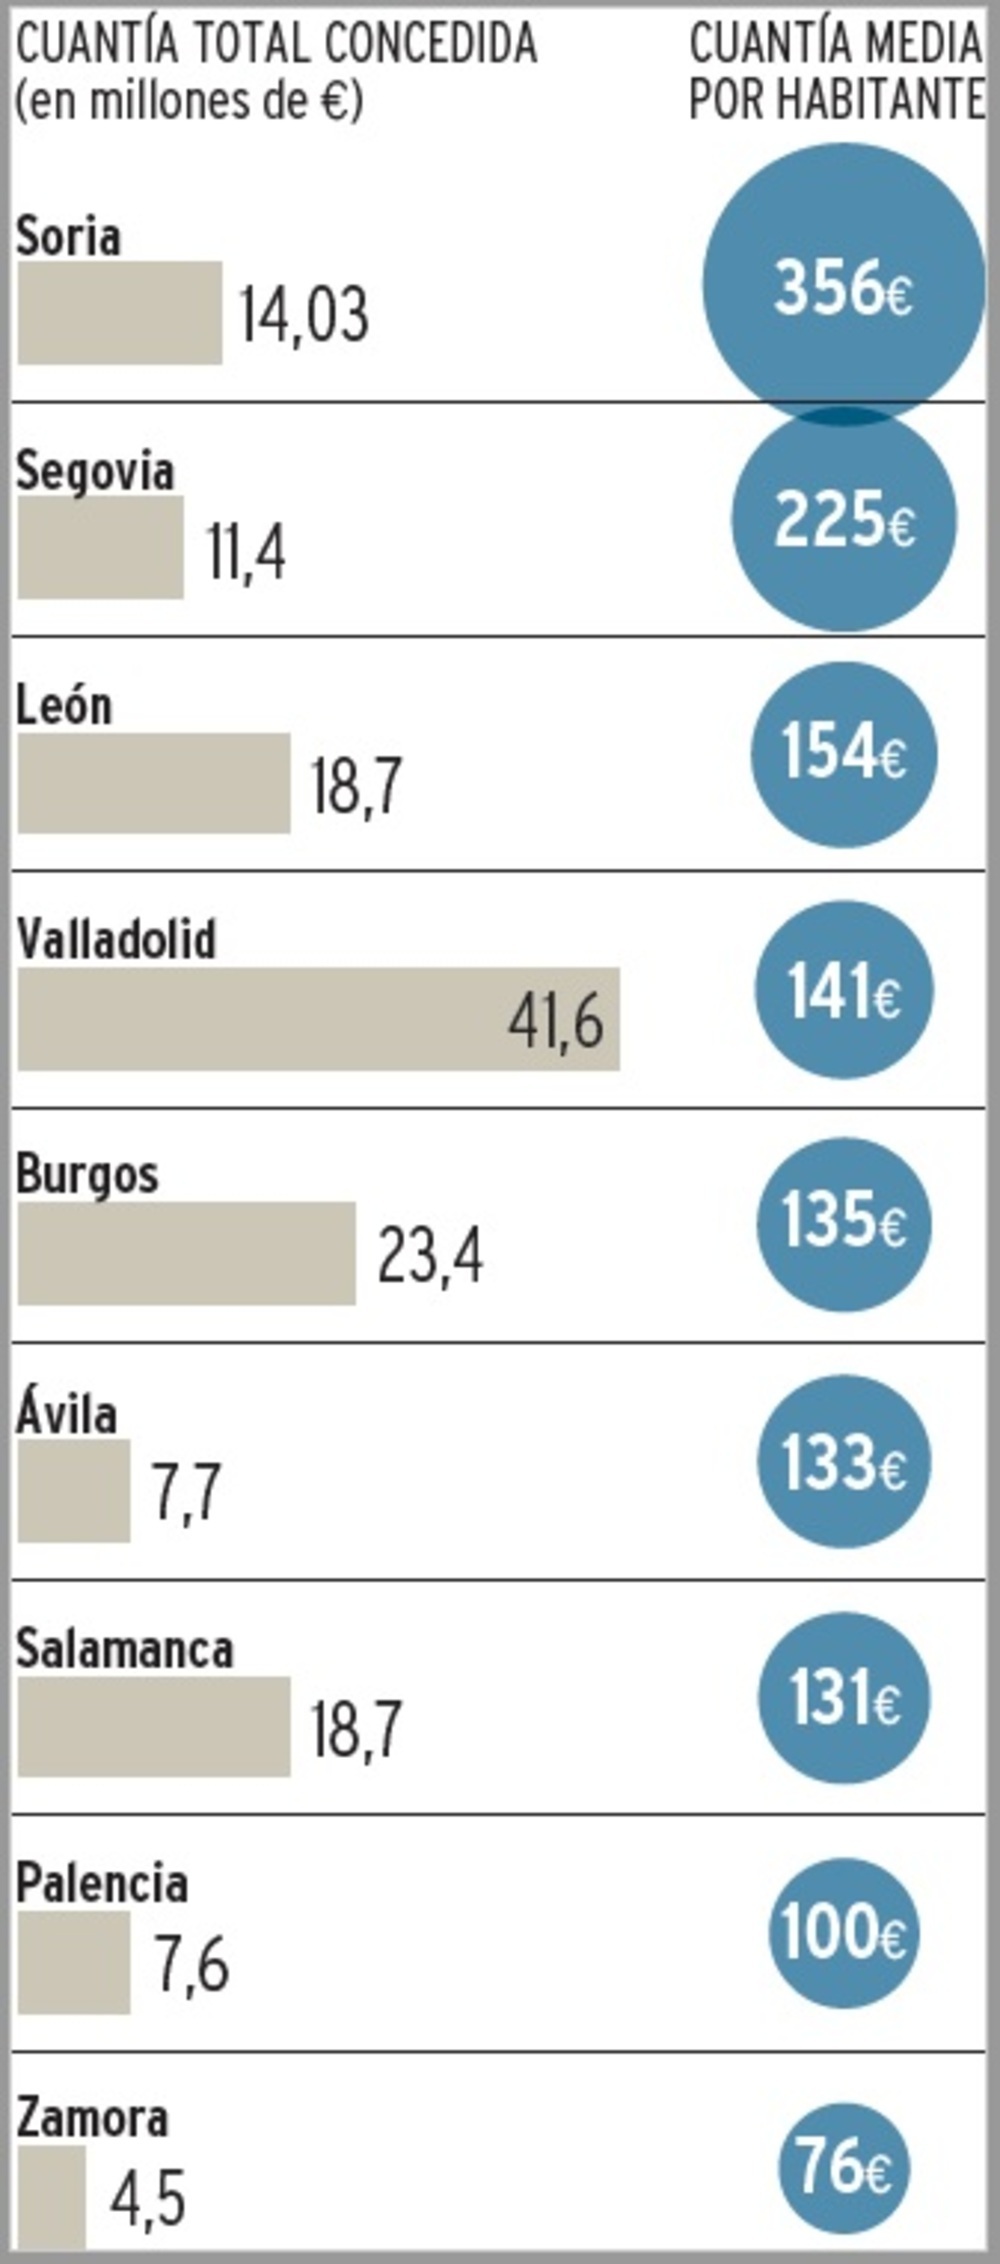 Fondos UE Next Generation captados por las capitales de Castilla y León para inversiones. Los datos fueron facilitados por cada ayuntamiento a petición de El Día, salvo en el caso de Zamora, que argumentó no disponer de datos actualizados.